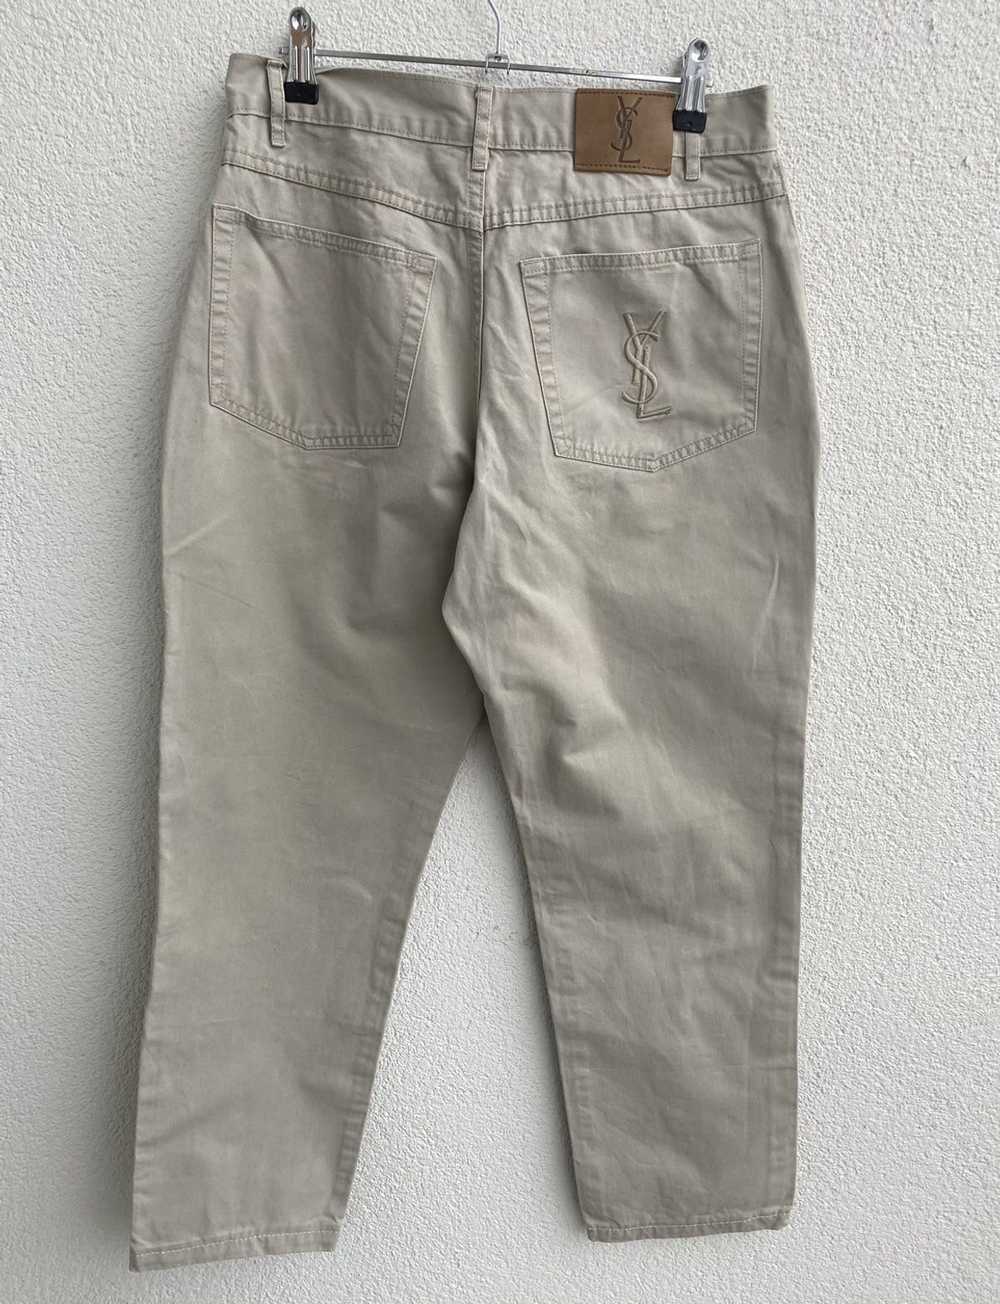 Yves Saint Laurent Beige YSL Cotton Jeans - image 5